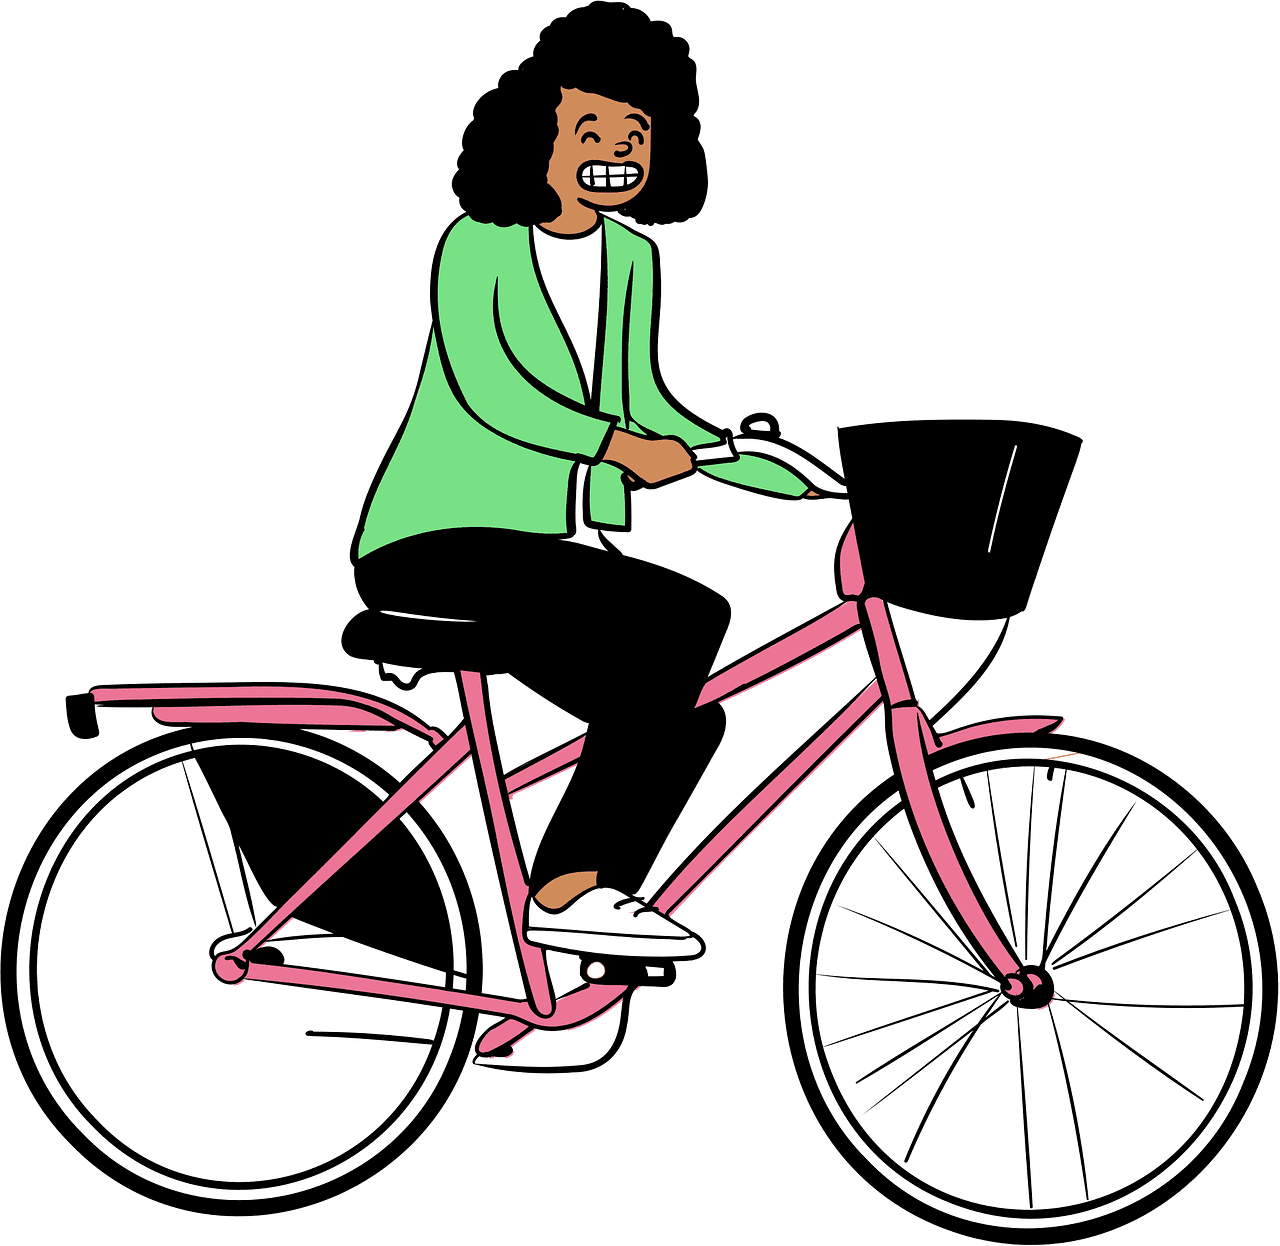 自転車に乗る女性イラストpng イラスト